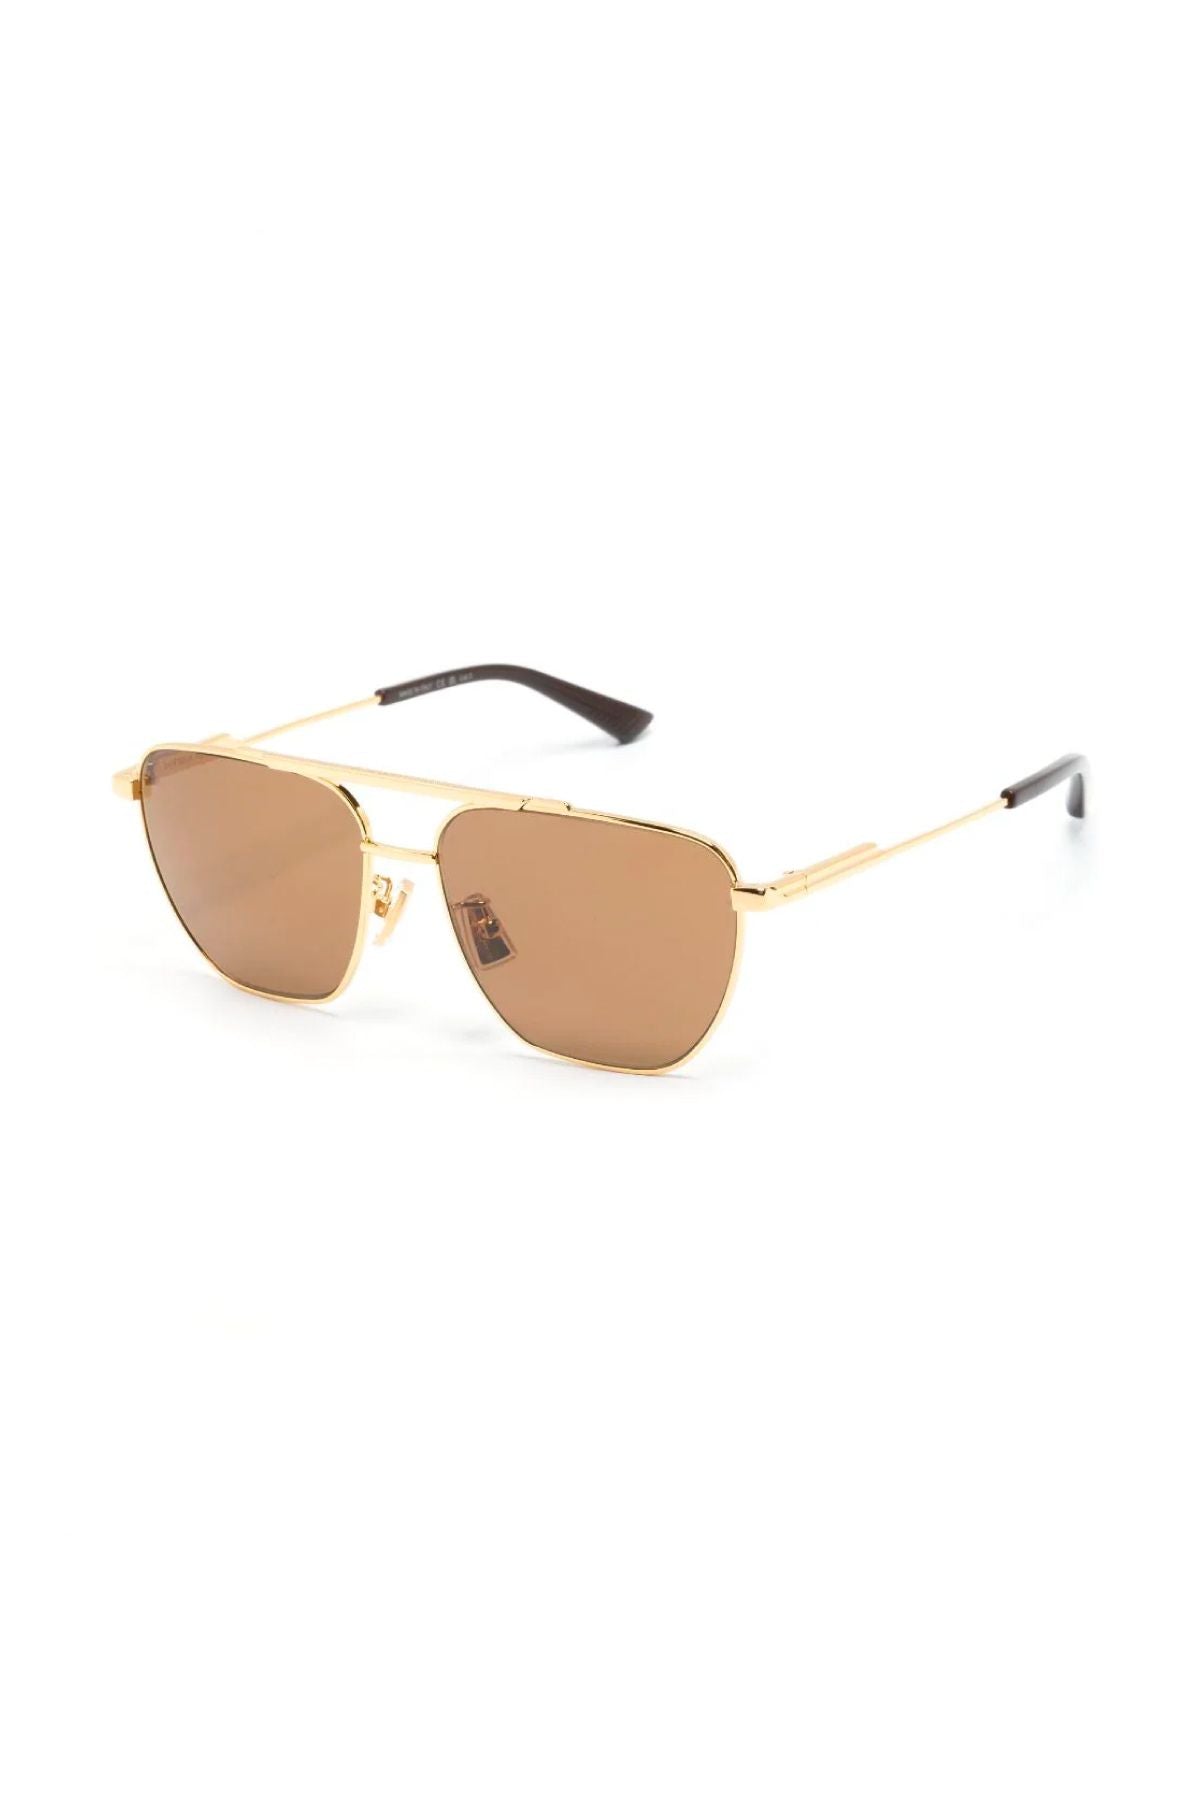 Bottega Veneta Classic Aviator Sunglasses - Gold